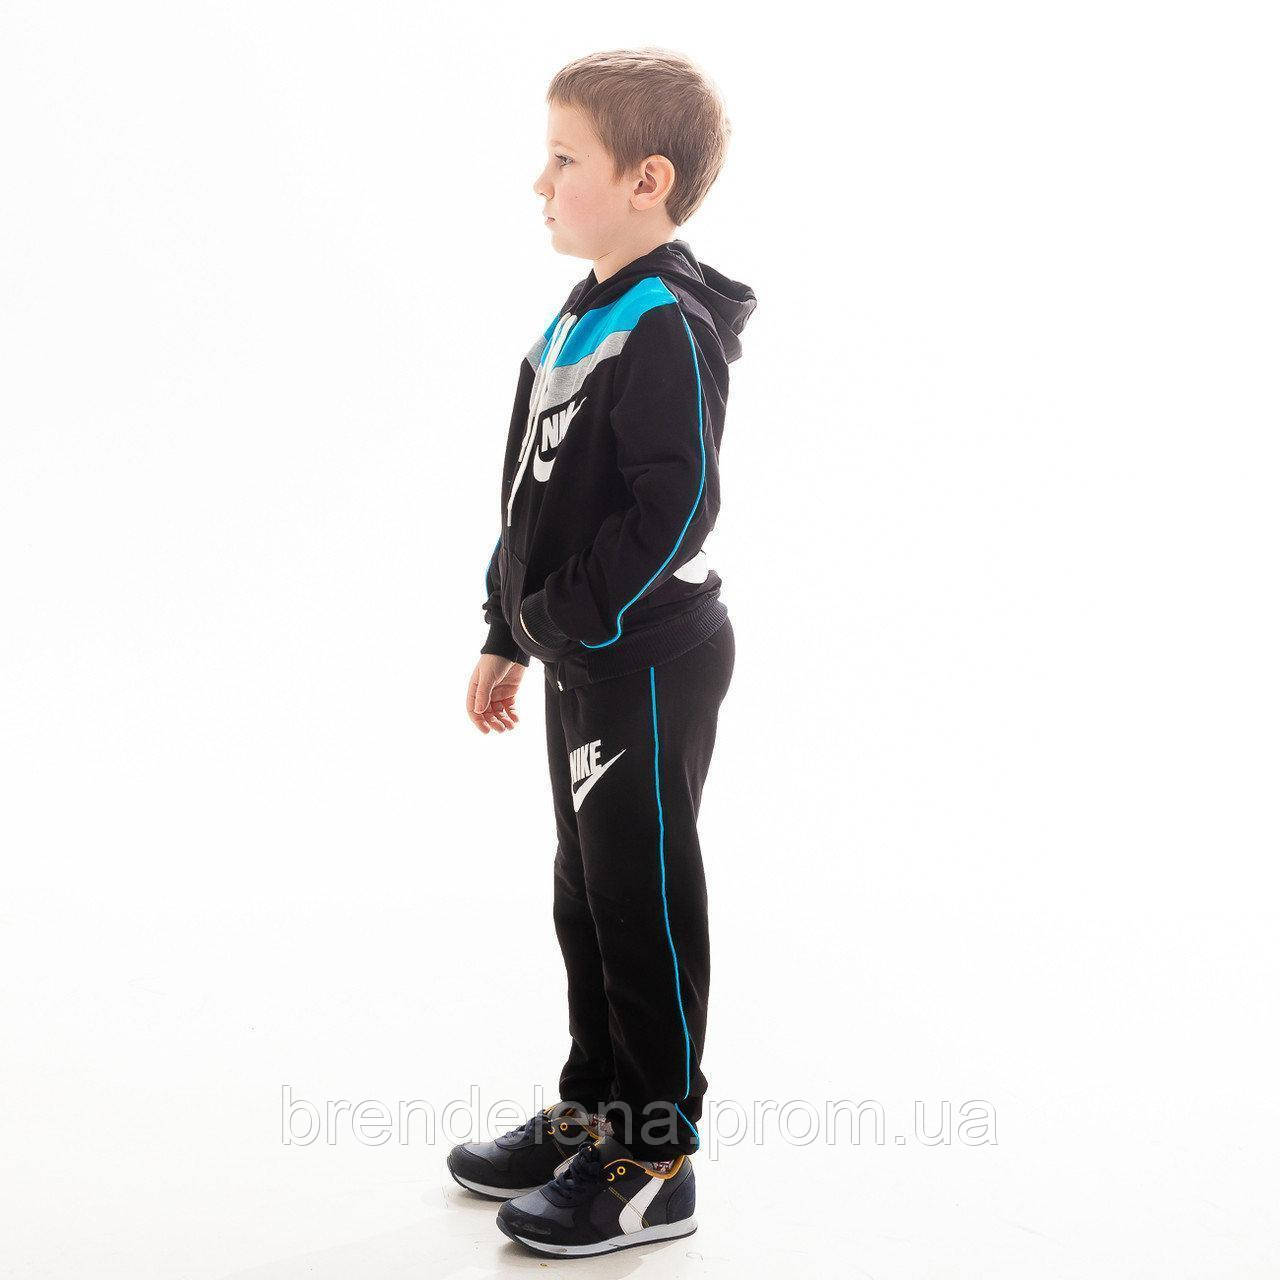 Спортивные костюмы для мальчиков 12. Спортивный костюм для мальчика Nike ya76 tri bf Cuff Wu LK 14782884. Спортивный костюм найк для мальчика. Спортивный костюм для мальчика 12 лет. Спортивный костюм для подростка мальчика.